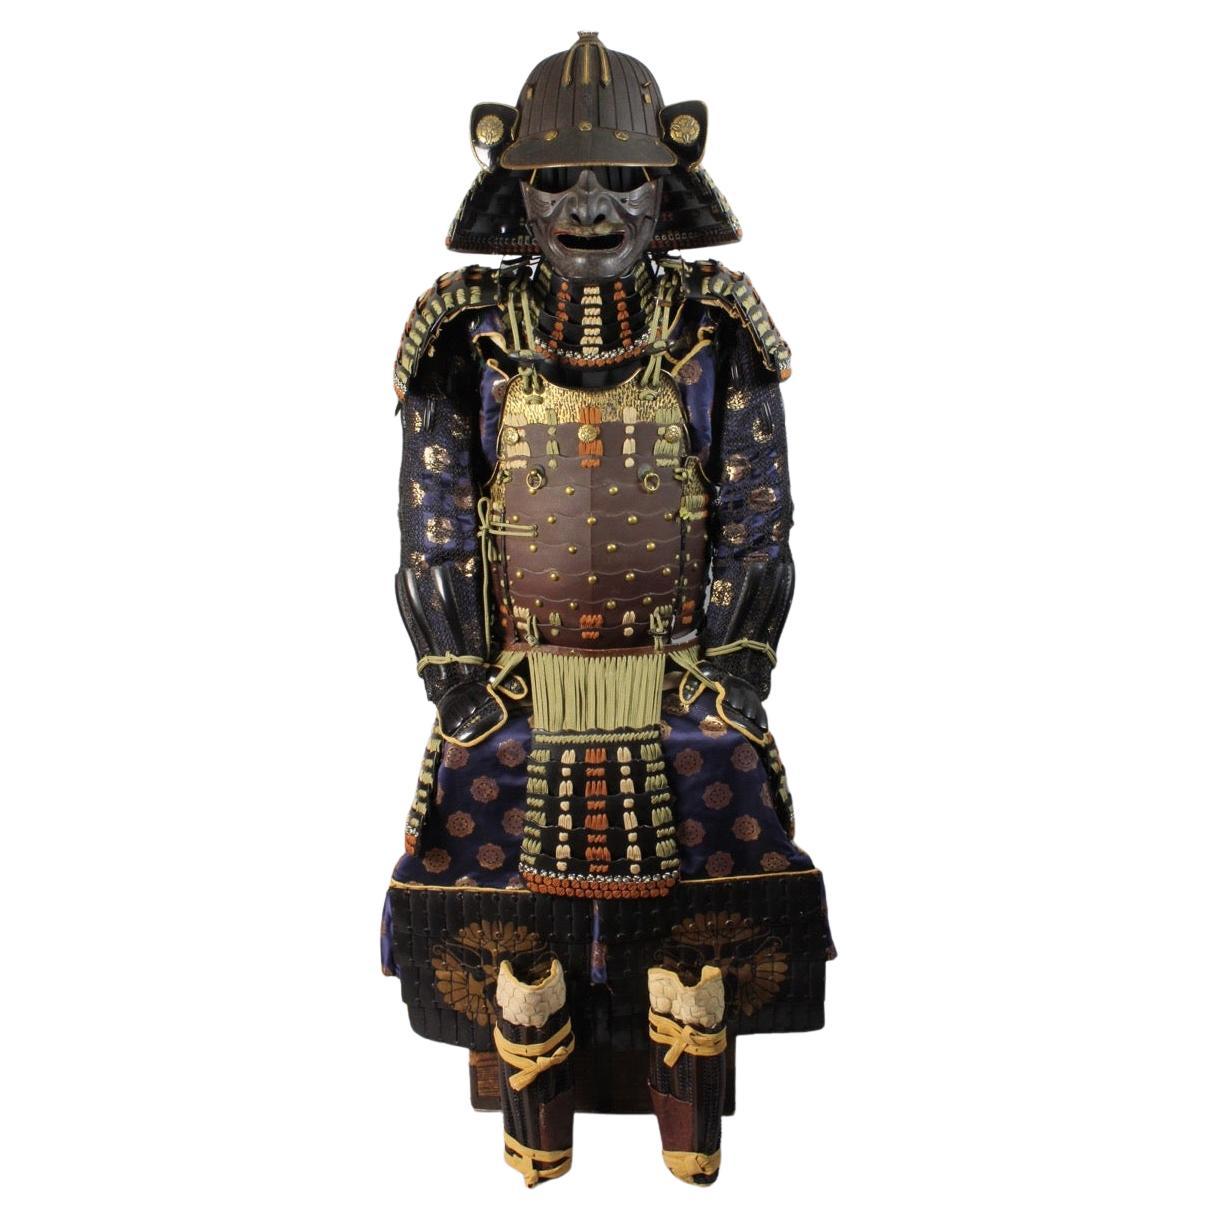 Armore de samouraï du 18e siècle (période Edo) certifiée (yoroi) dans un exceptionnel état Preservati